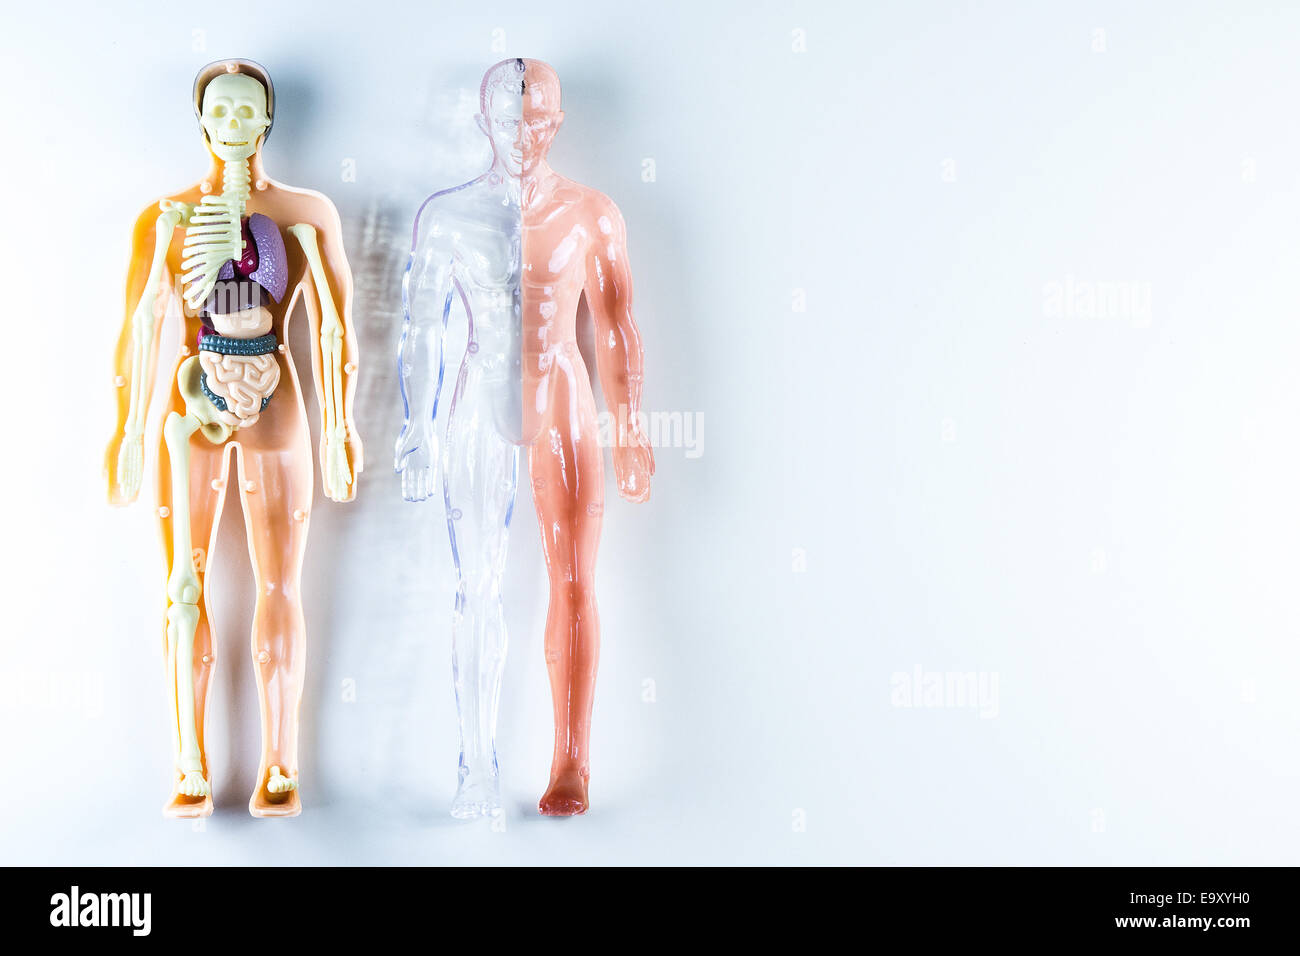 vision of human organs Stock Photo